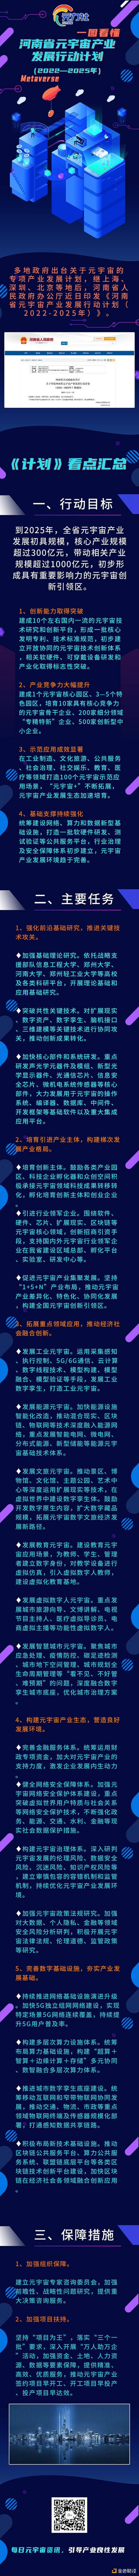 抢占元宇宙赛道：河南省发布最新行动计划